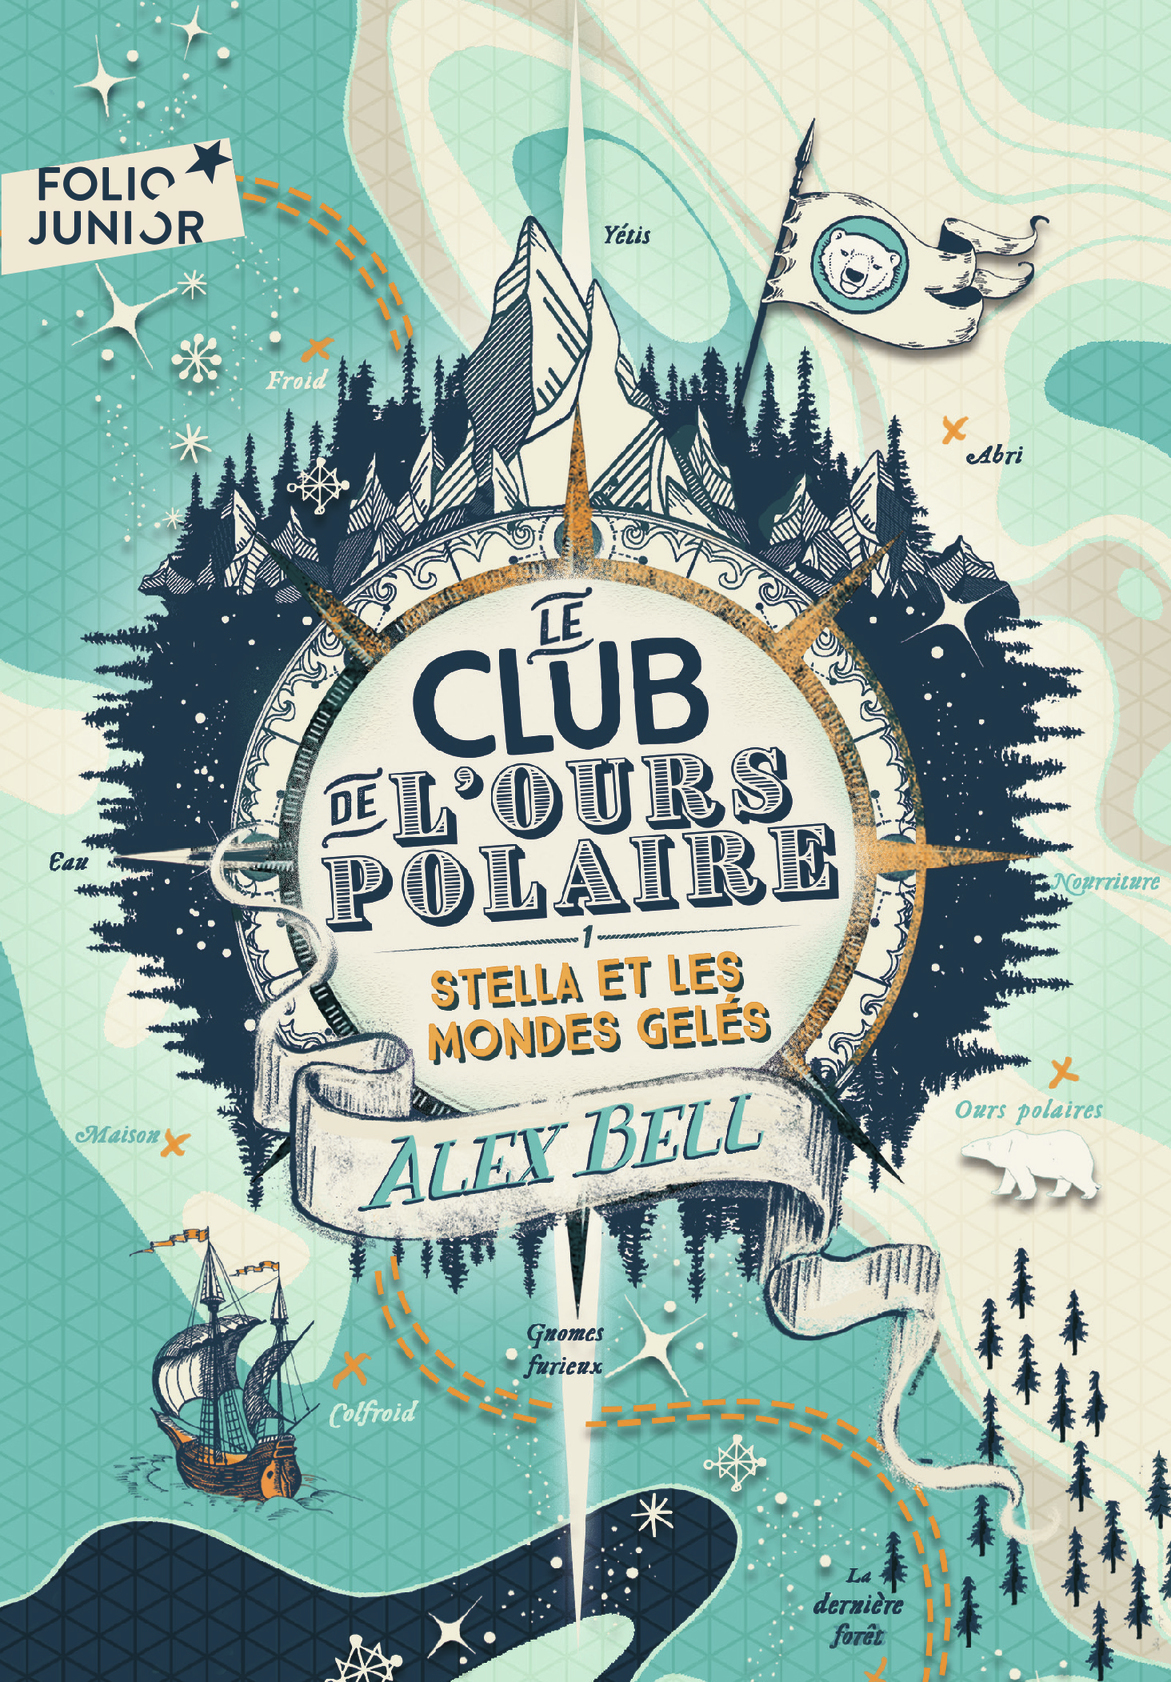 Afficher "Le club de l'ours polaire (Tome 1) - Stella et les mondes gelés"